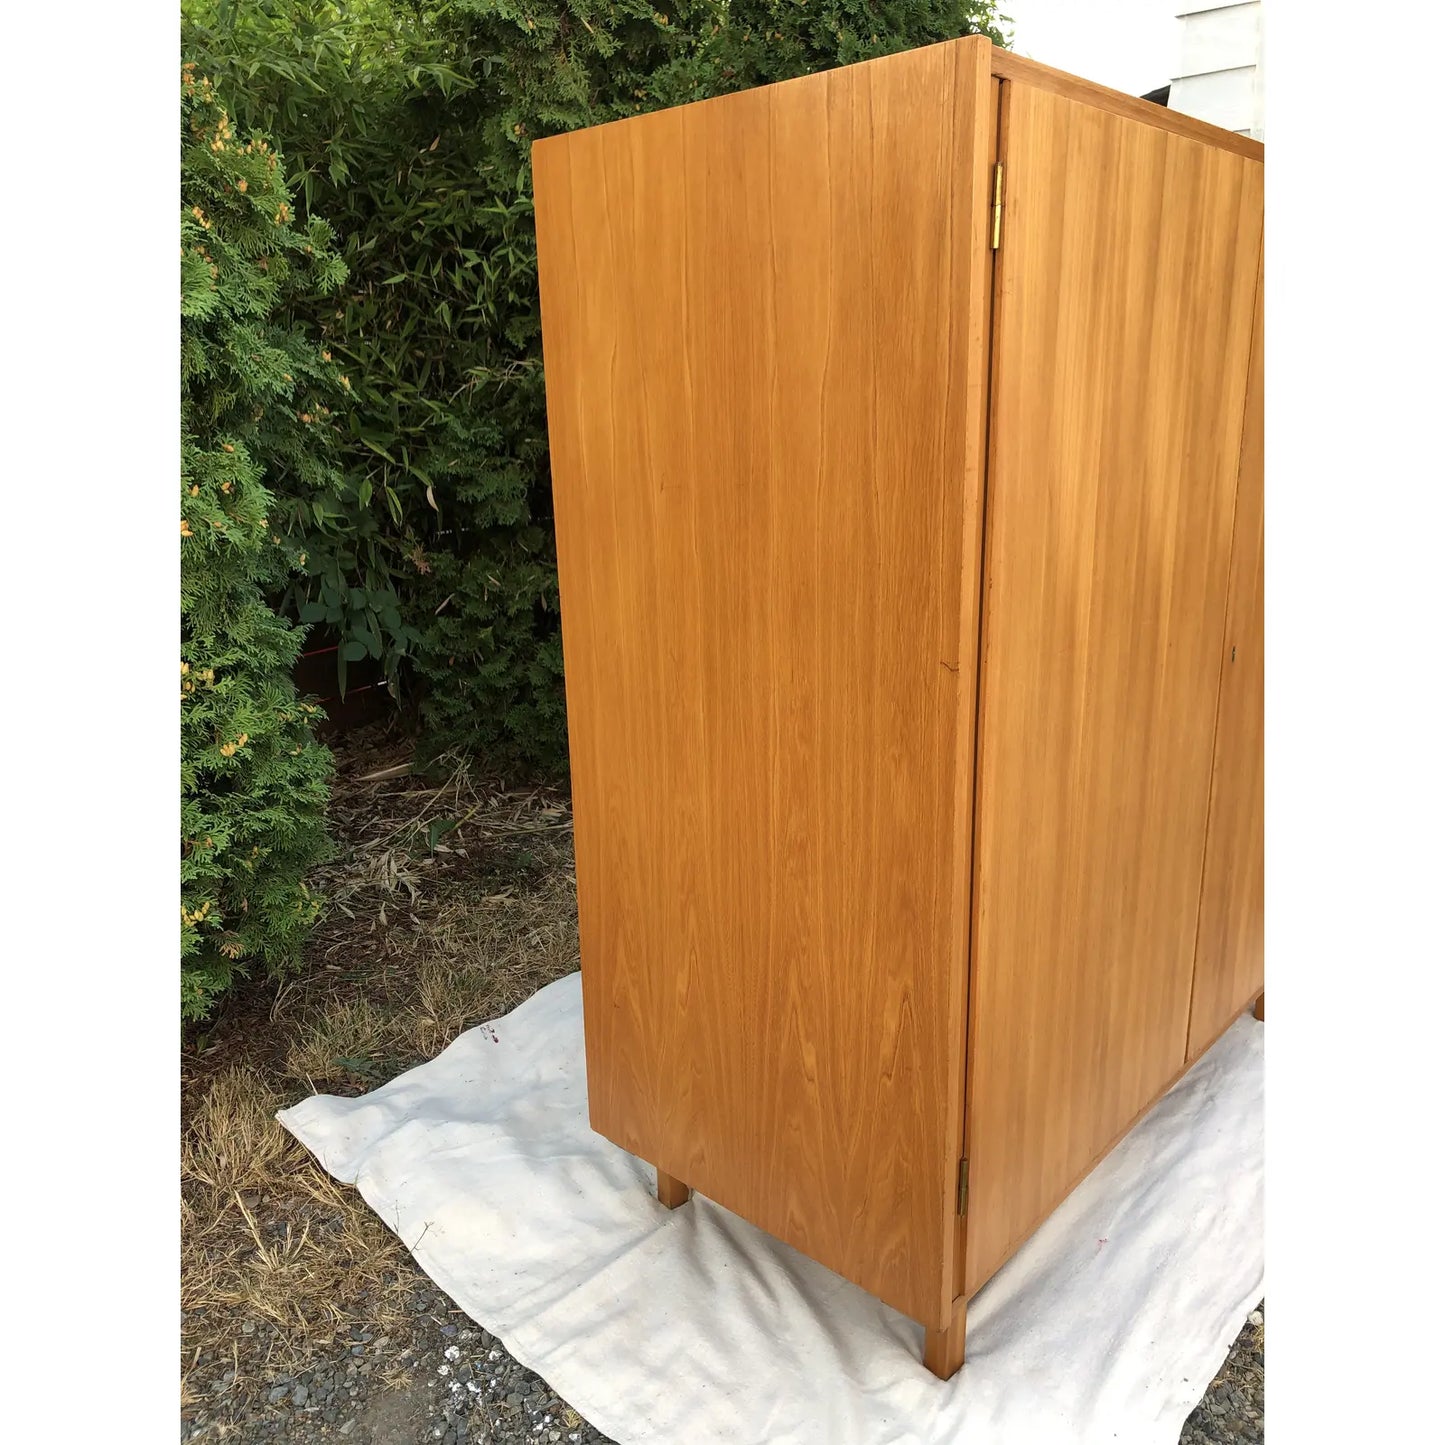 1960s Mid-Century Modern Oak Two-Door Cabinet